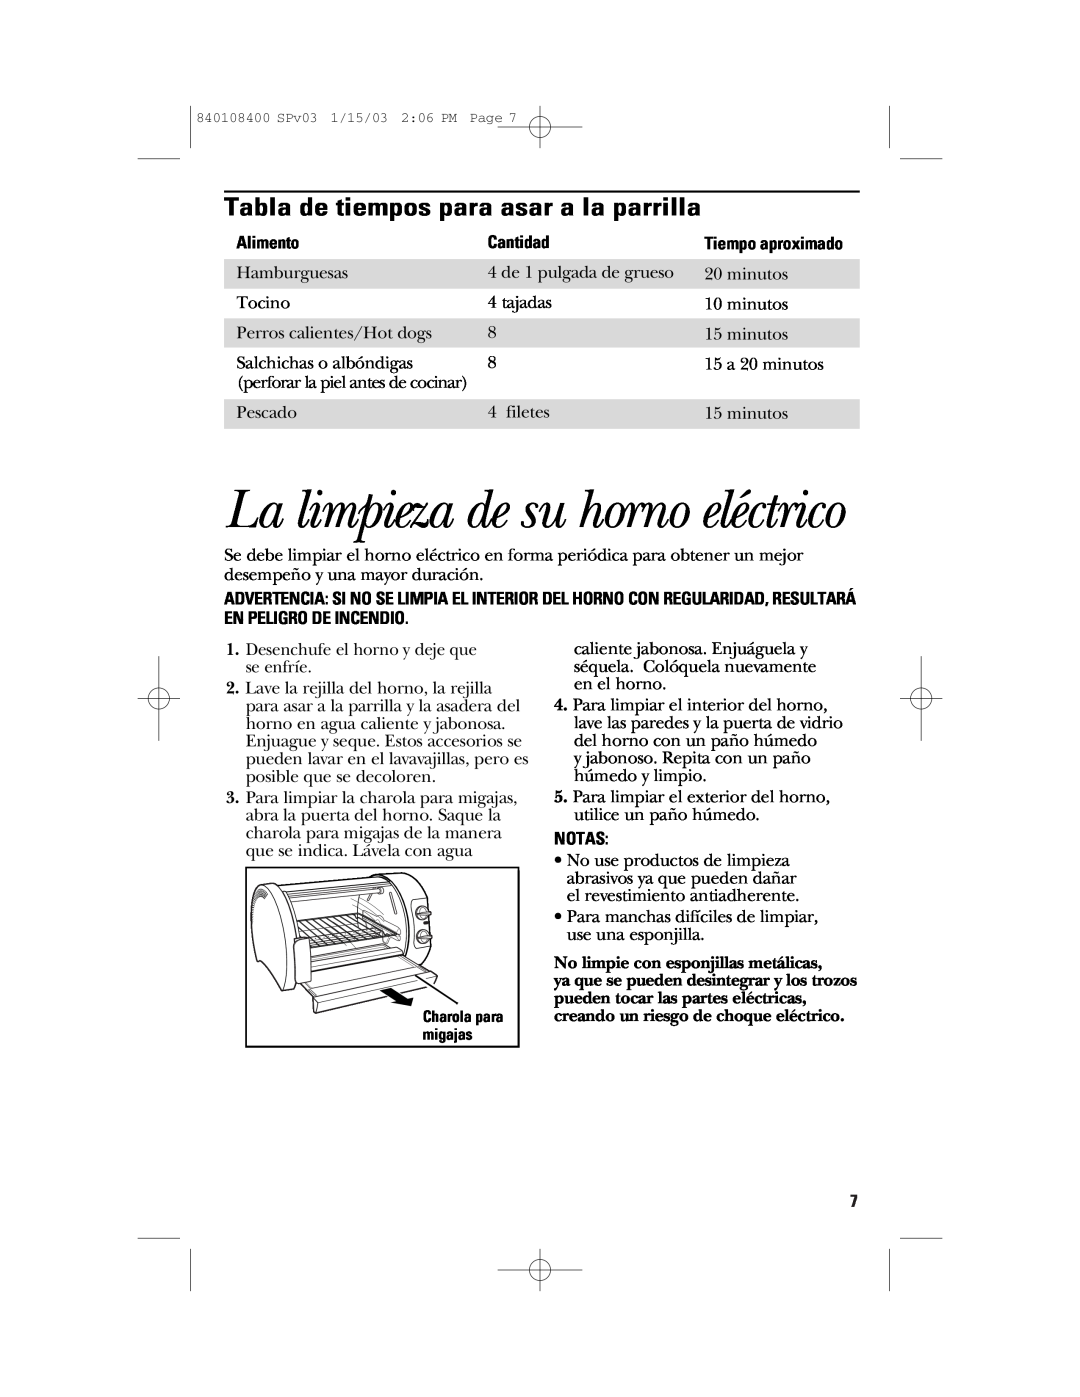 GE 168955 manual La limpieza de su horno eléctrico, Tabla de tiempos para asar a la parrilla, Alimento, Cantidad, Notas 